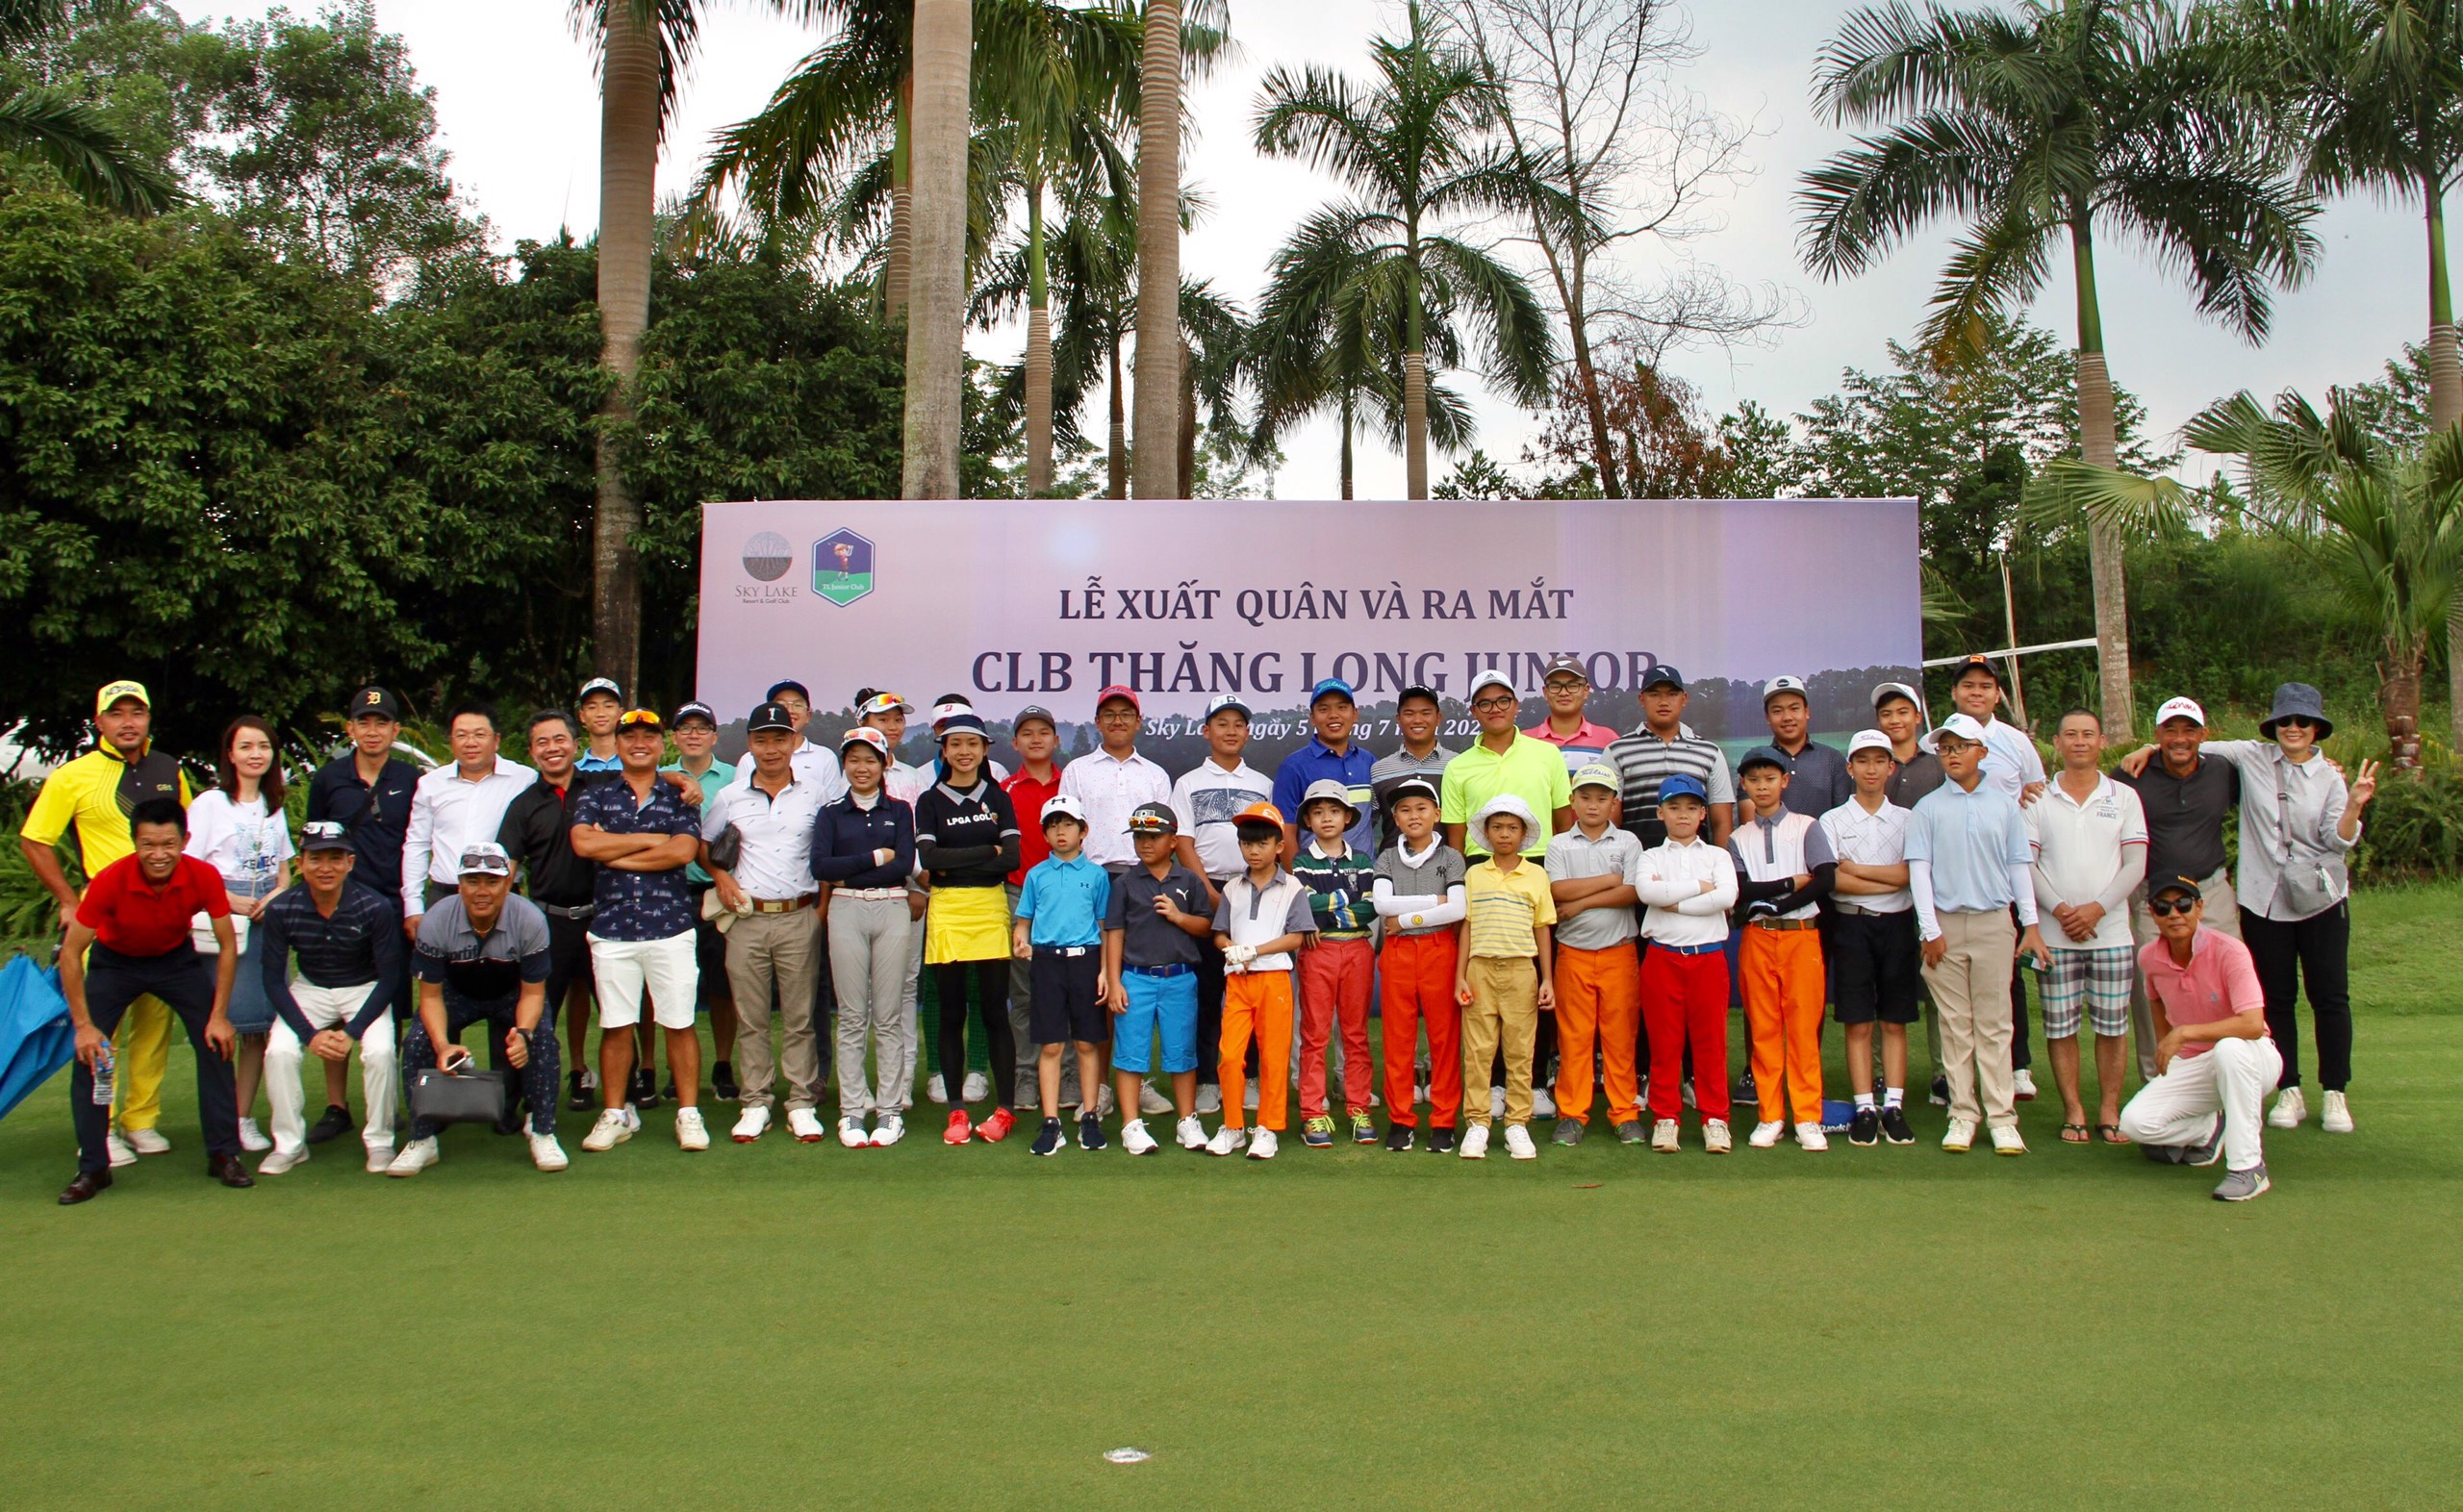 CLB Golf trẻ Thăng Long - Định hướng lâu dài cho việc phát triển golf trẻ